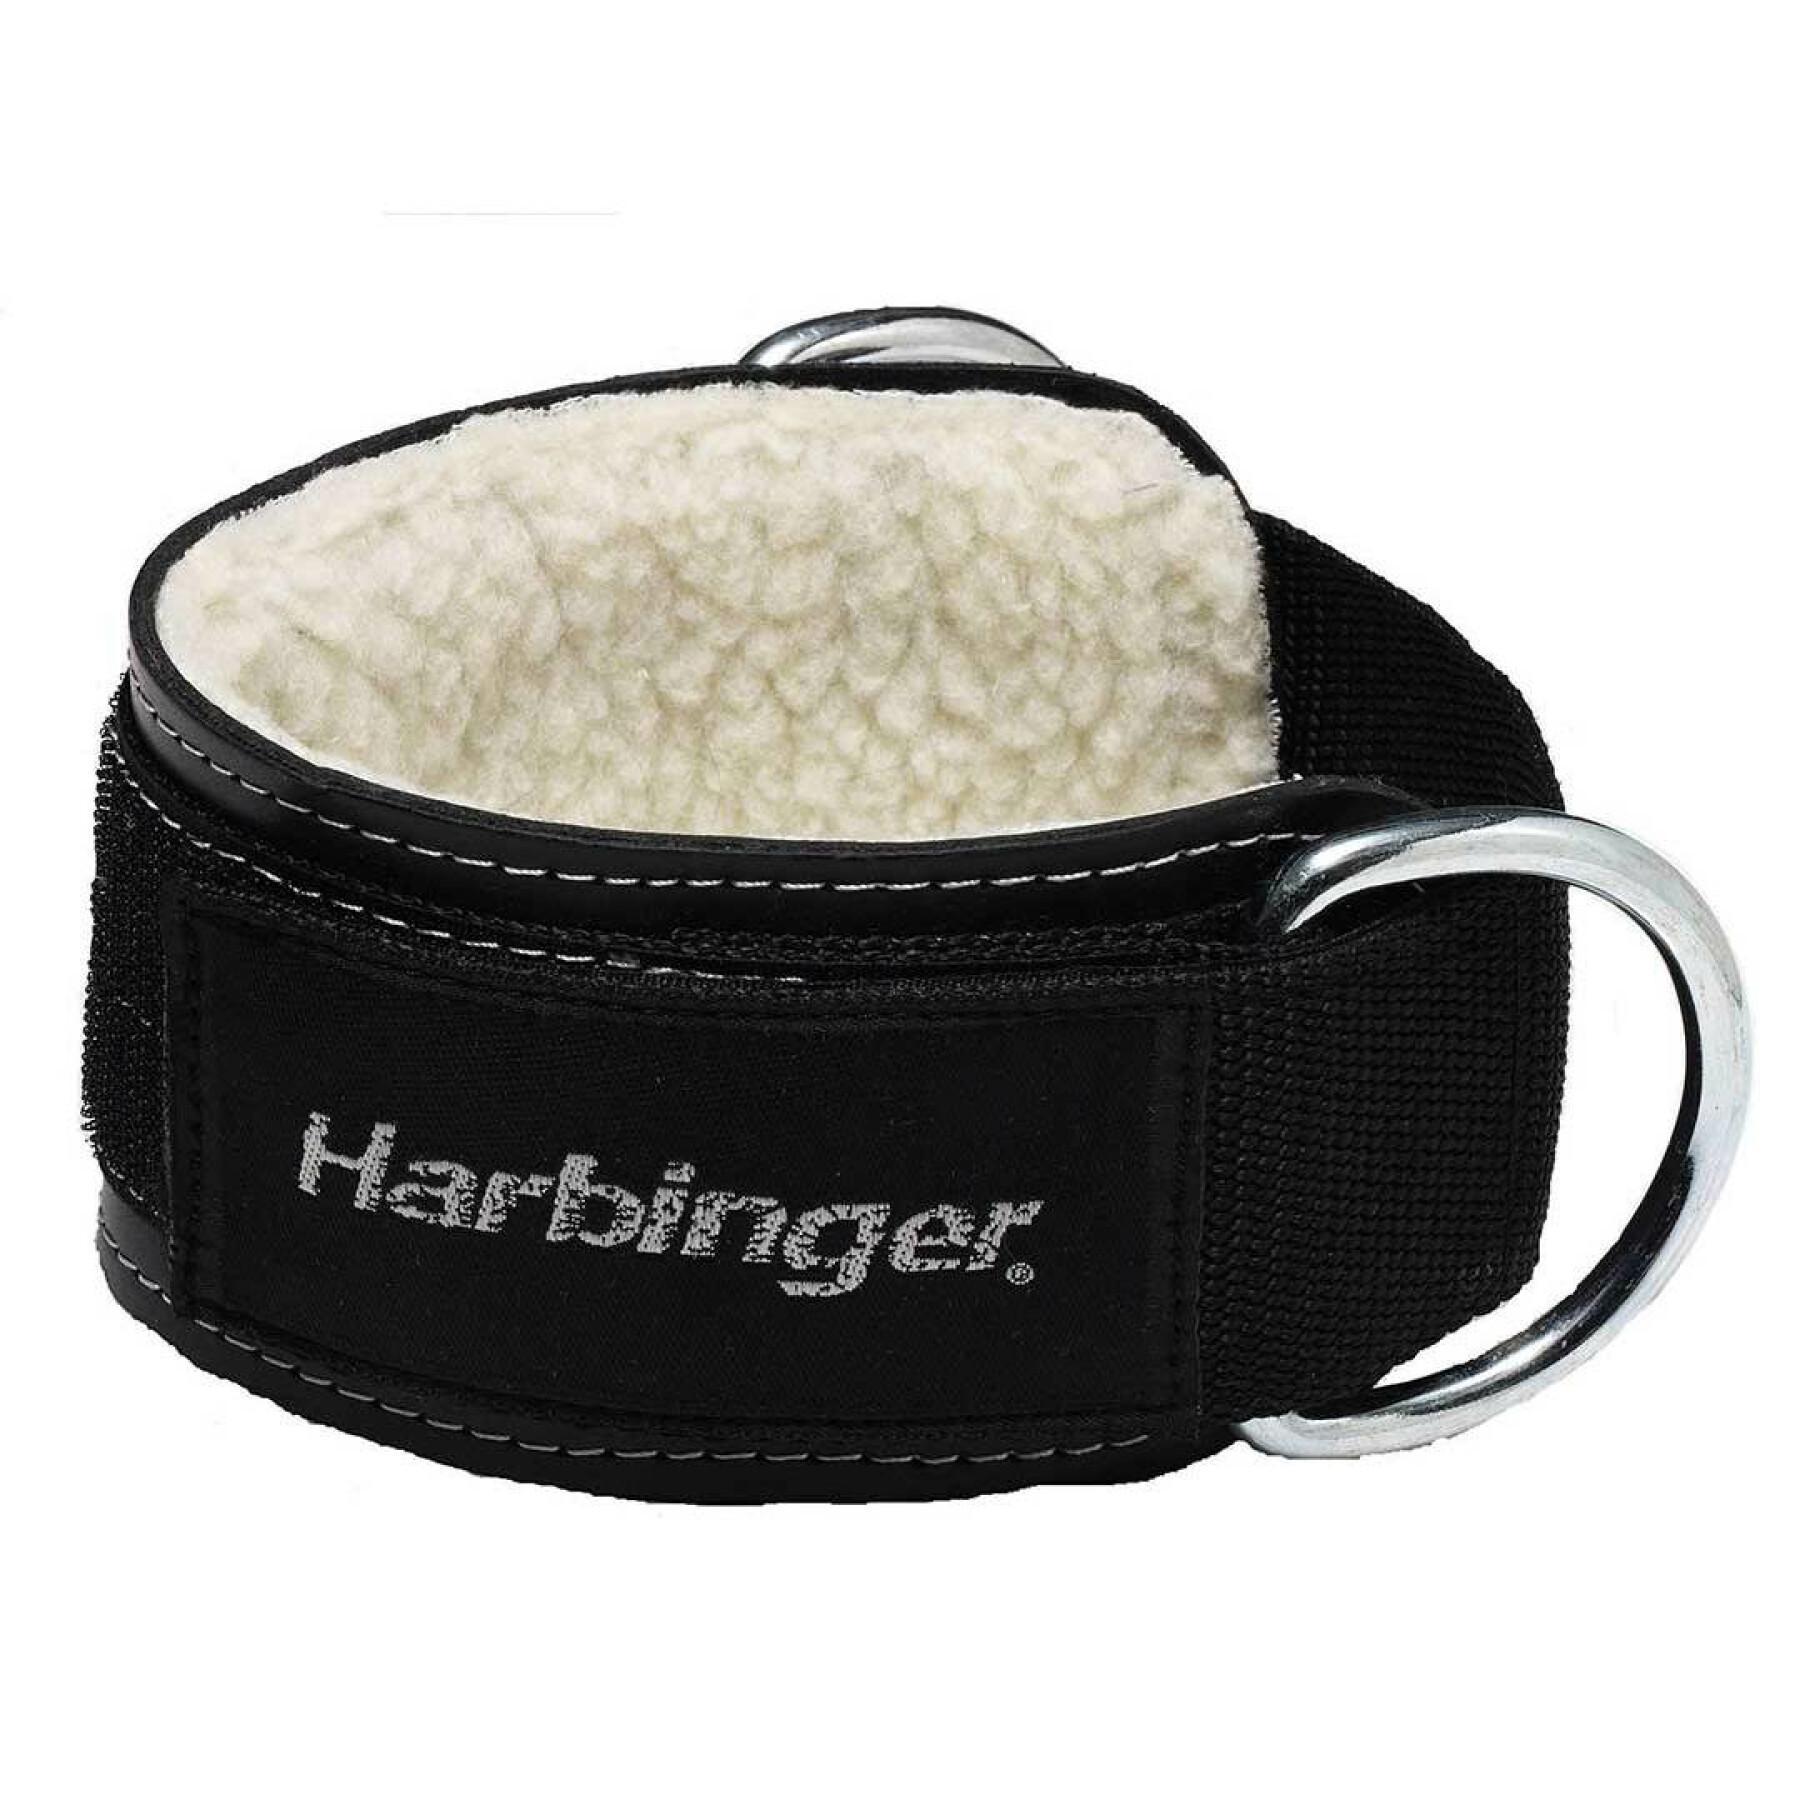 Leather ankle strap Harbinger